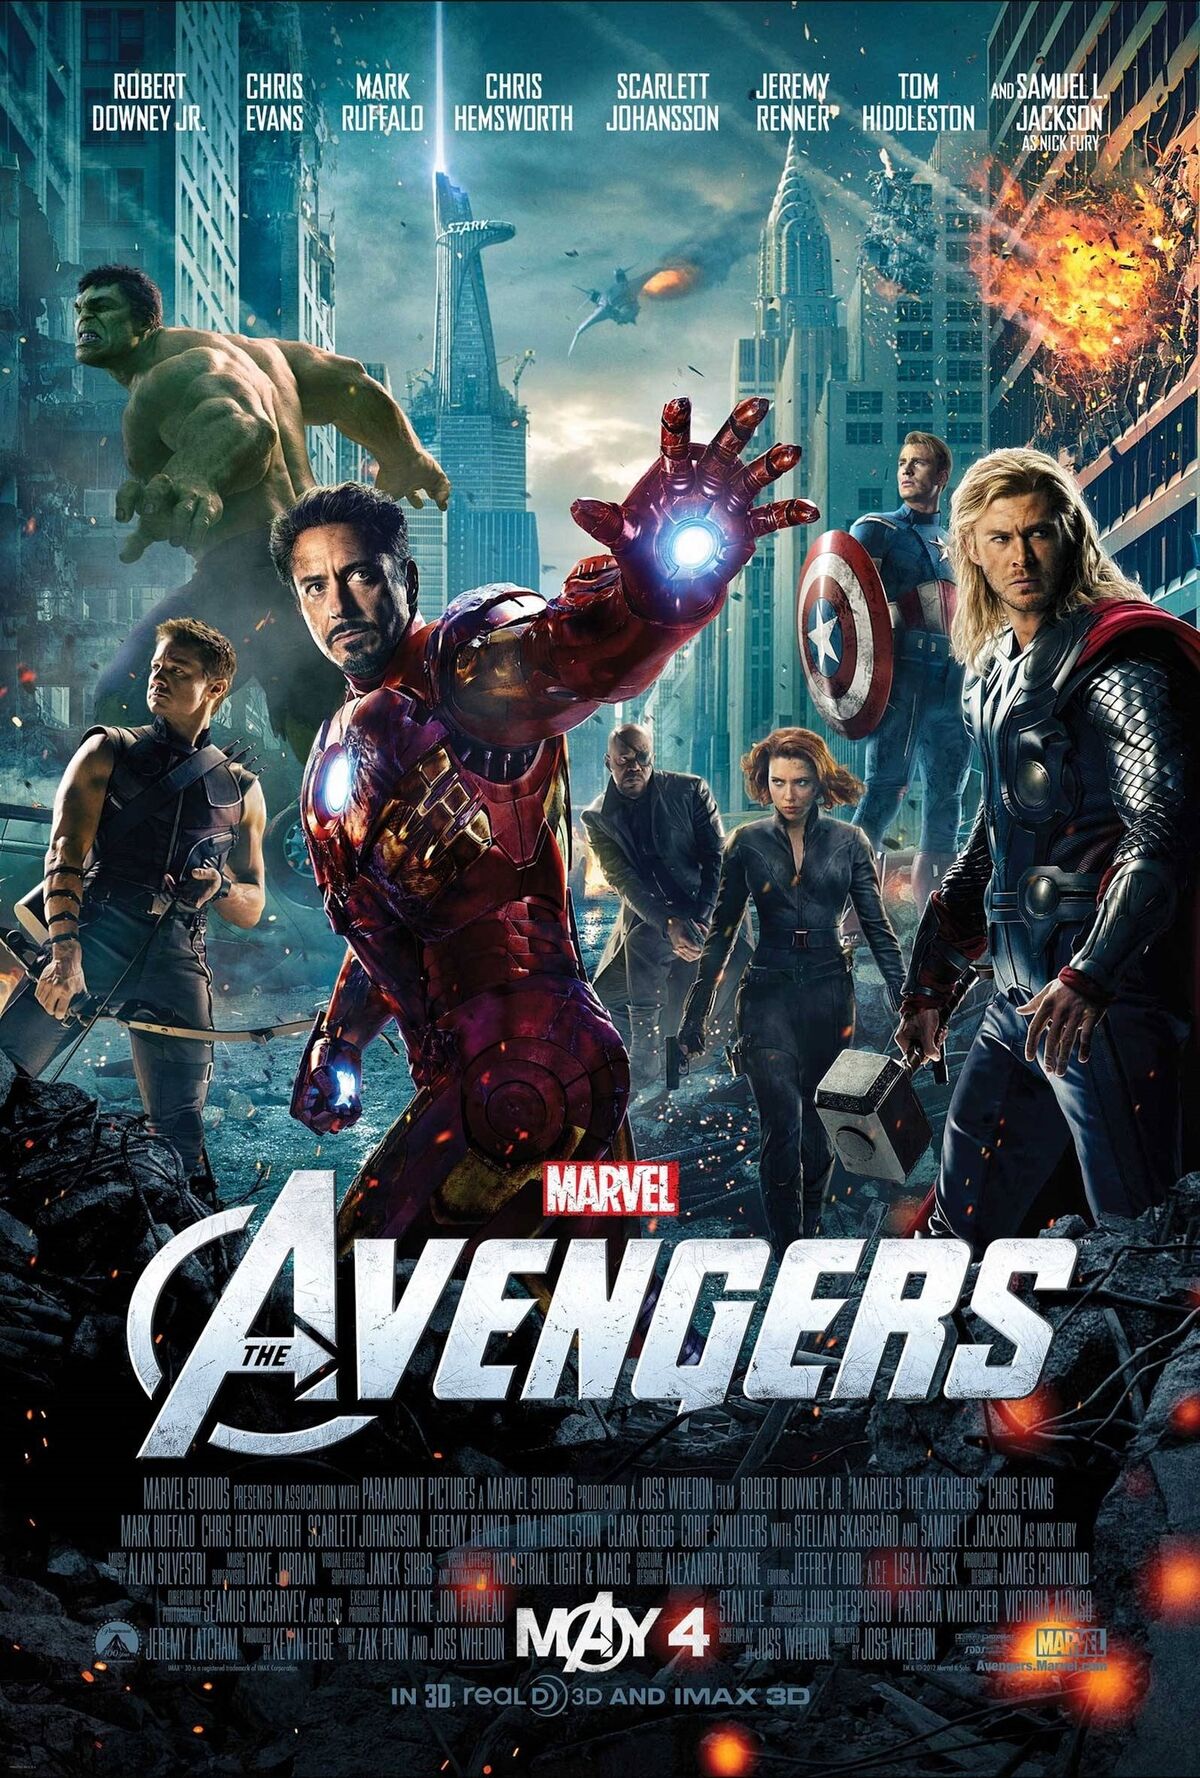 Avengers Secret Wars - Avengers No More - Region 4 - Tracking